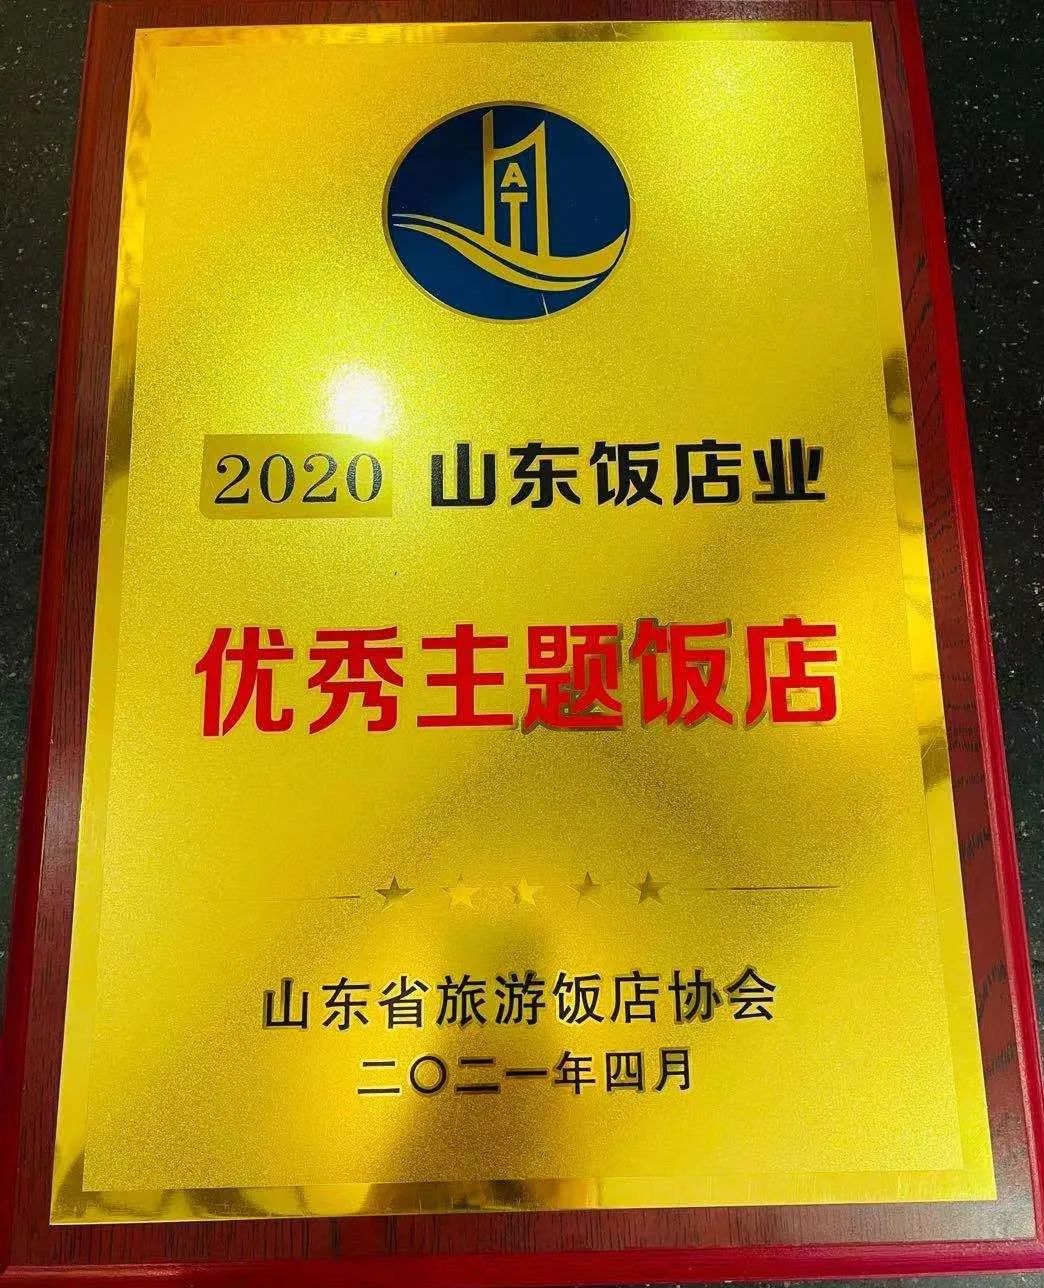 夫子宾舍济南千佛山店荣获“2020年山东饭店业优秀主题饭店”称号